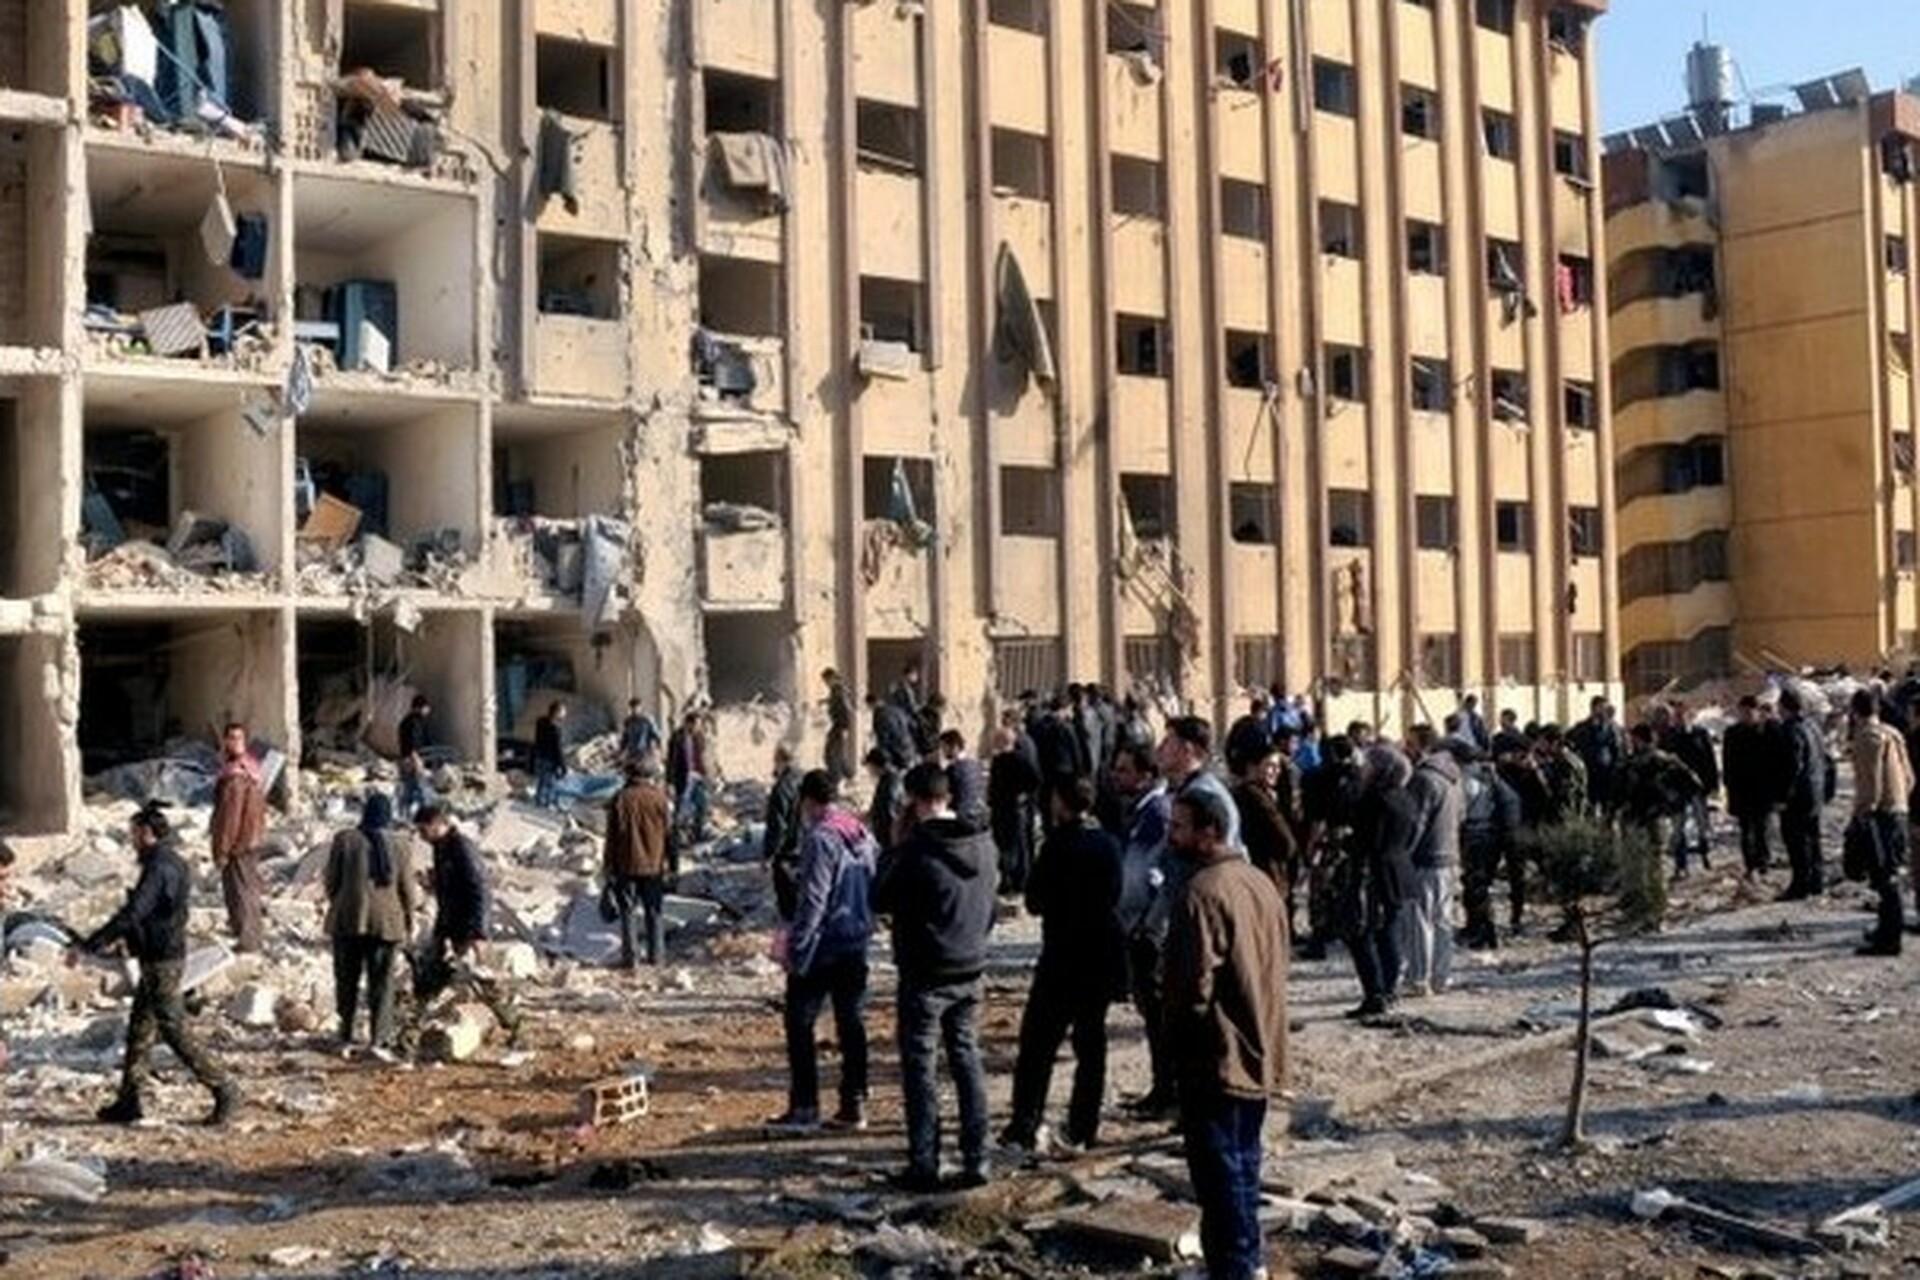 Aleppo University after a missile strike, January 2013